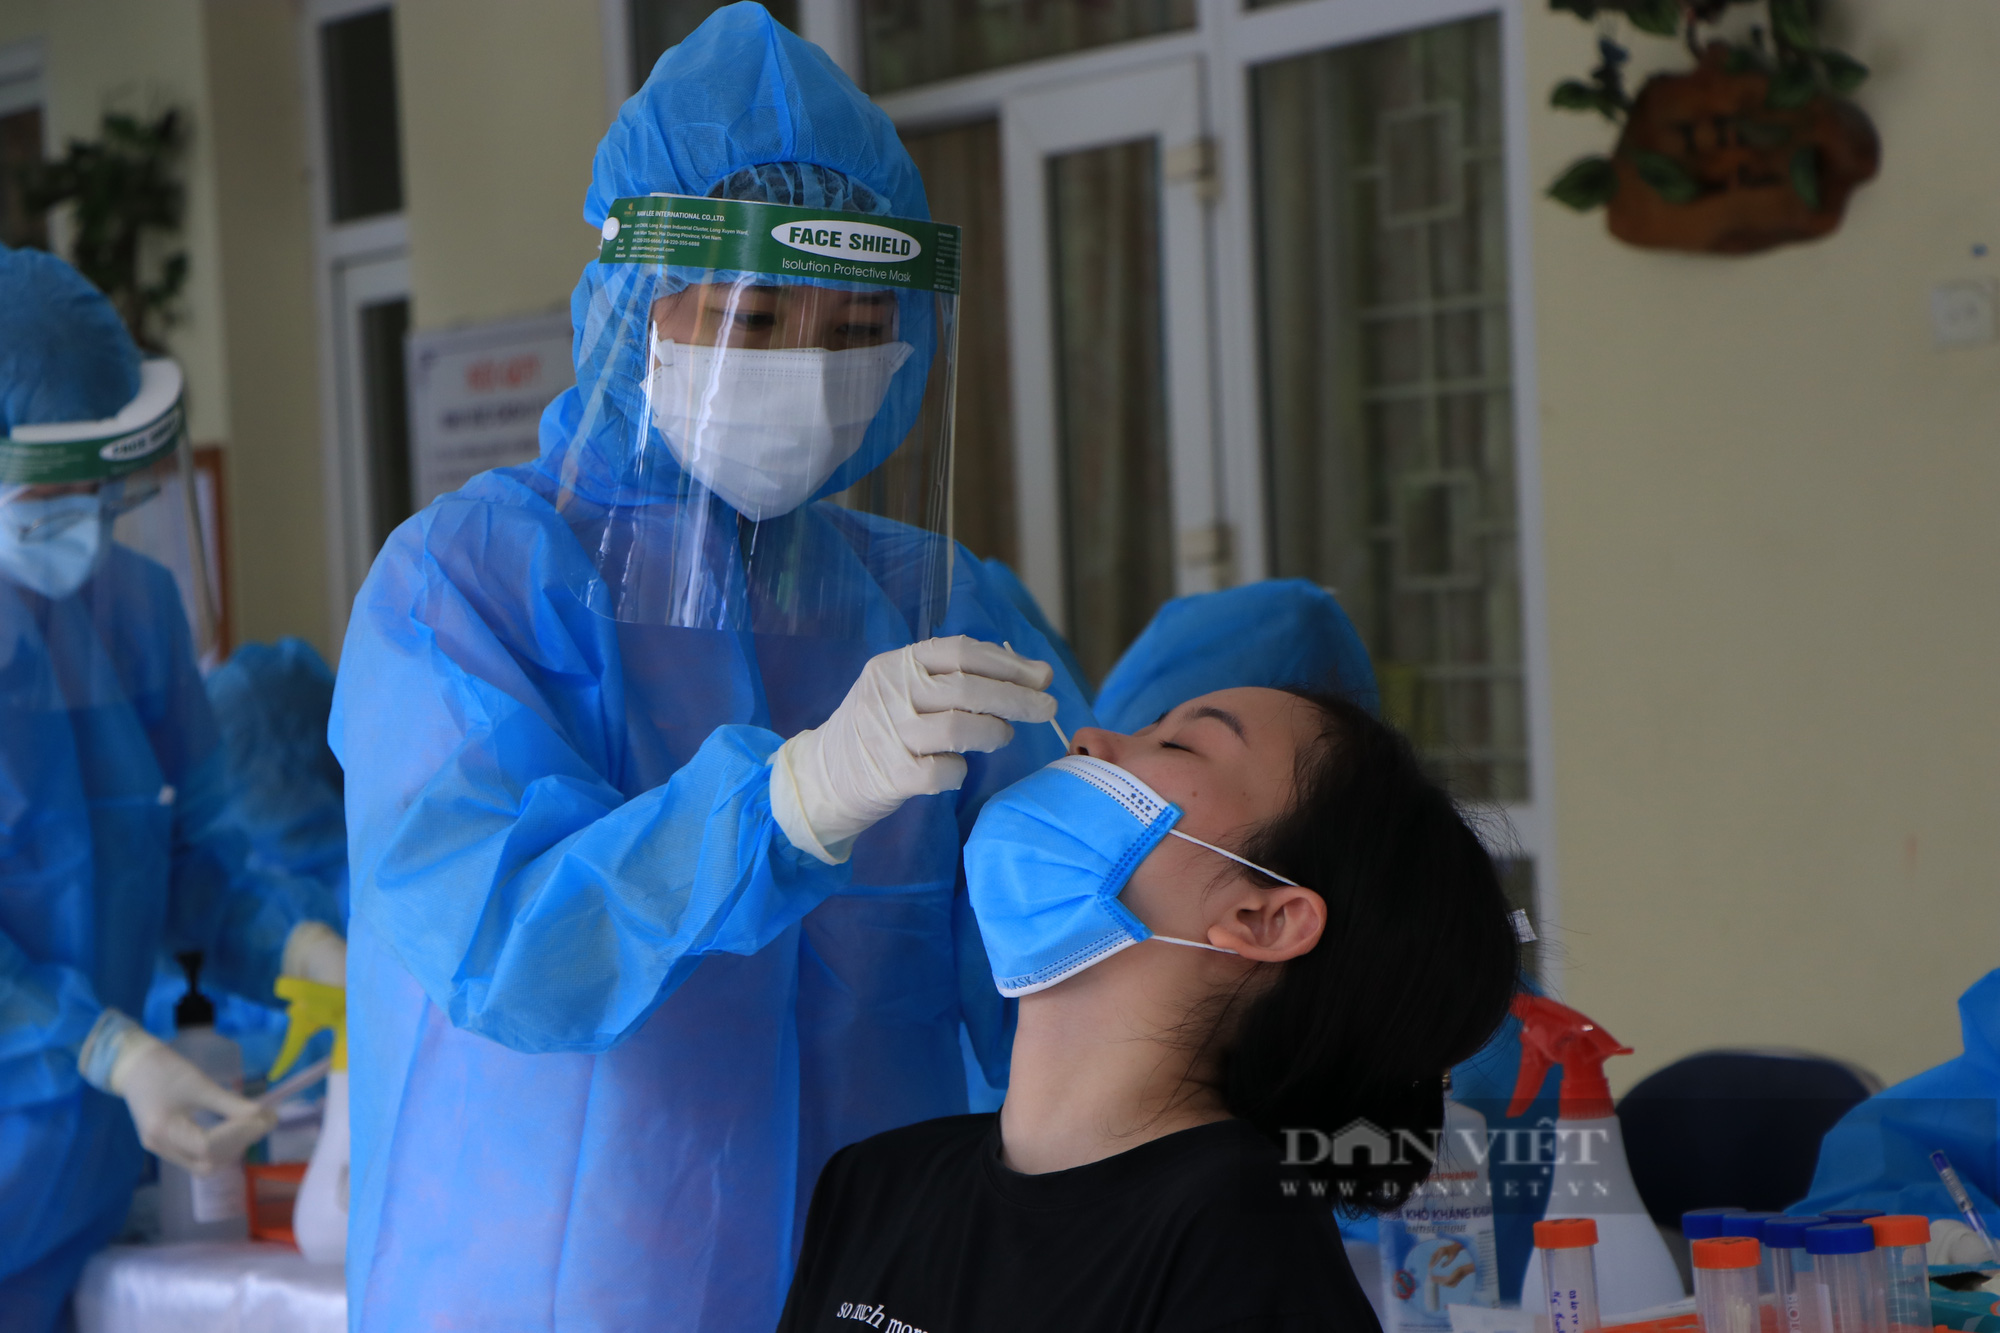 Hà Nội: Chủ tịch Đống Đa chỉ đạo kiểm tra nhân viên y tế “quên” sát khuẩn sau khi lấy mẫu xét nghiệm  - Ảnh 4.